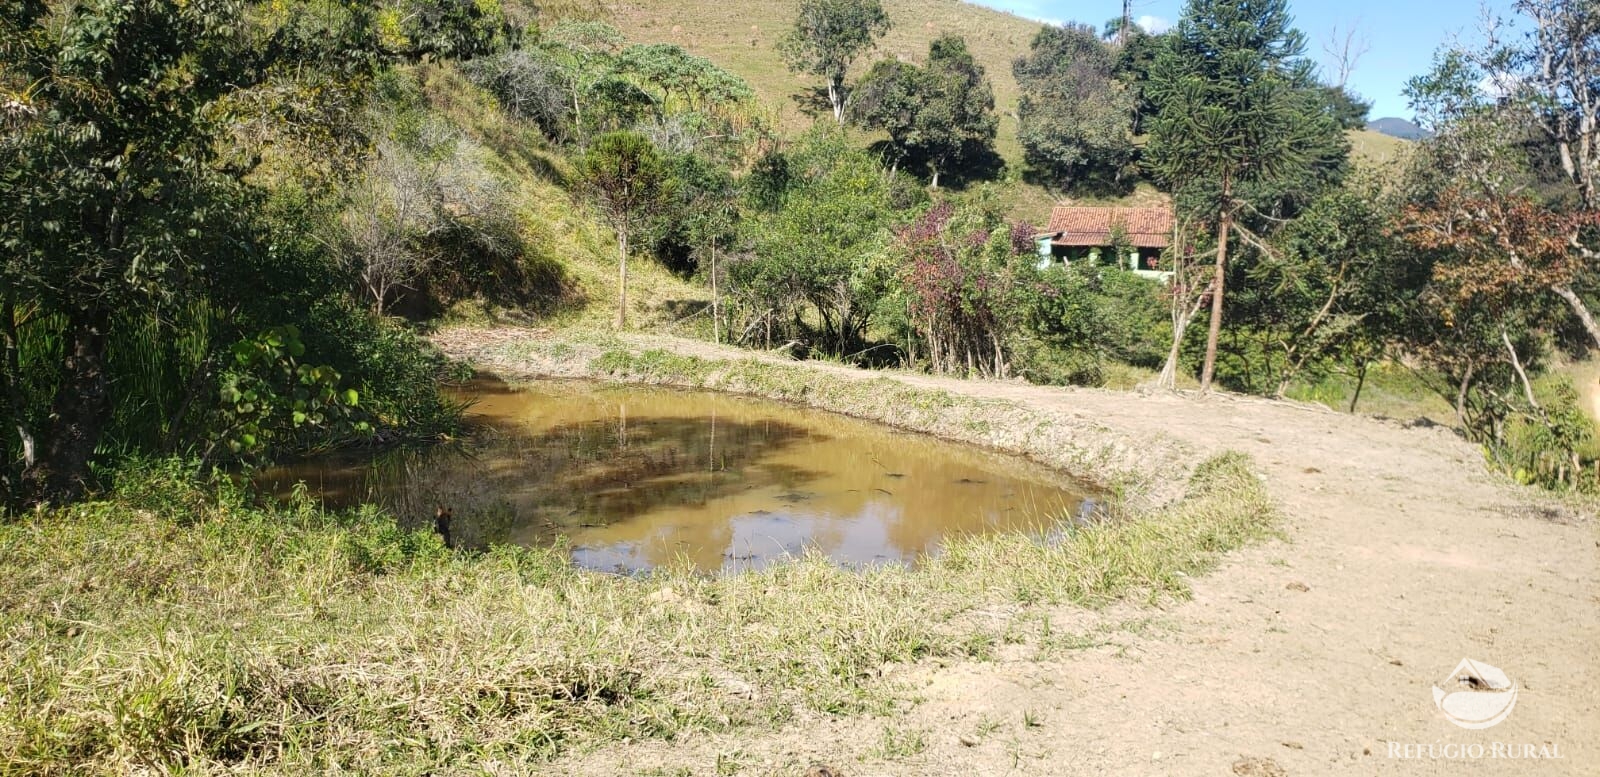 Sítio de 12 ha em São Luiz do Paraitinga, SP